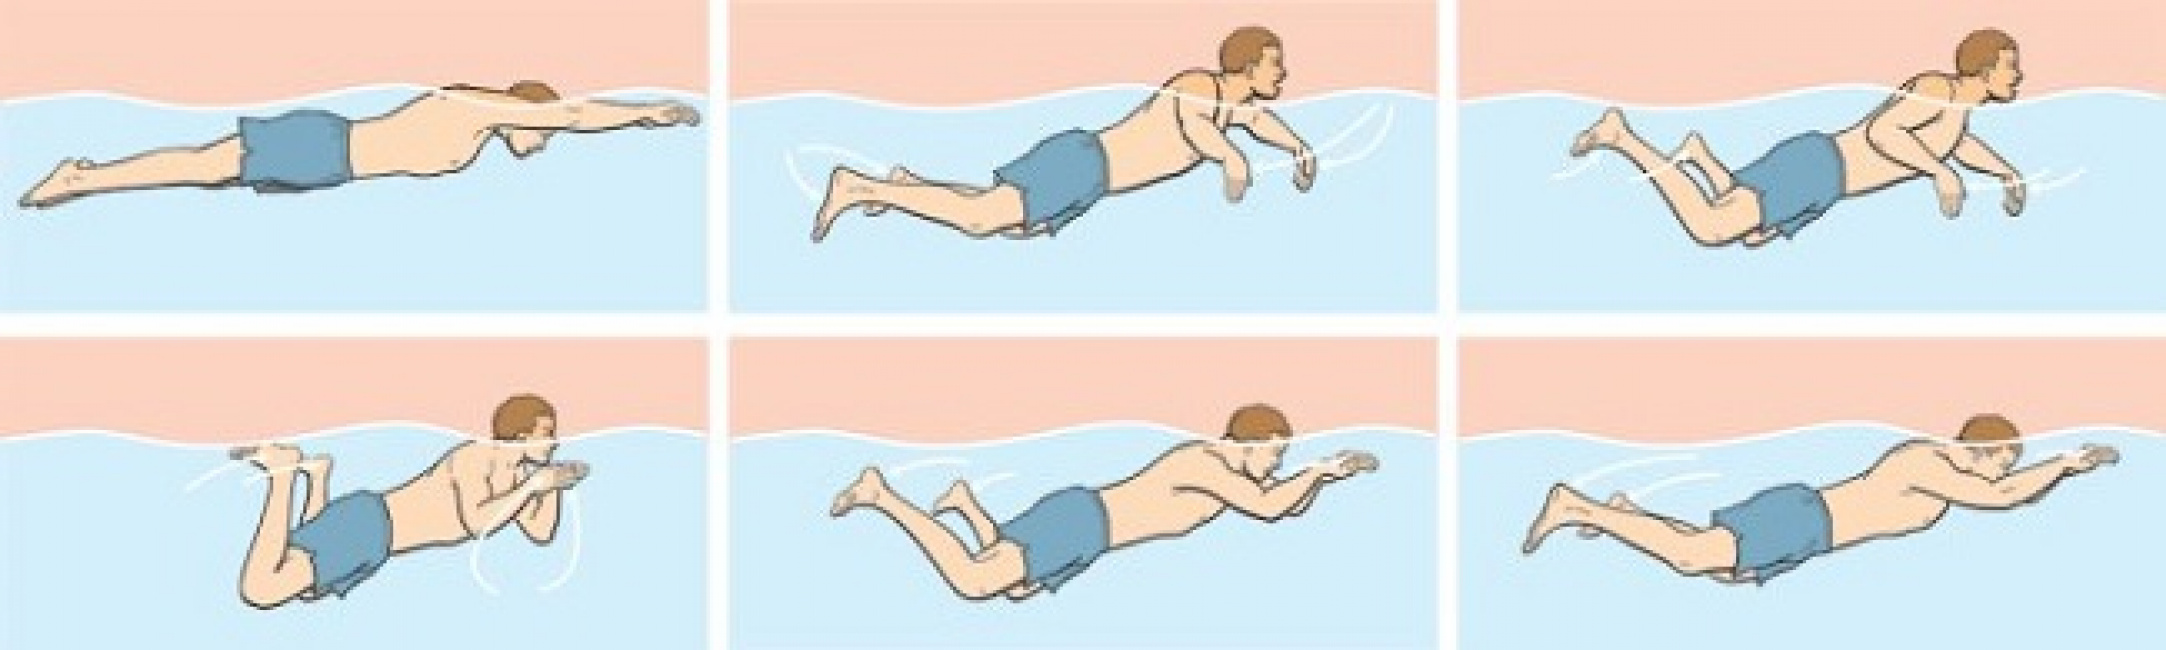 kiến thức bơi lội, hướng dẫn 4 kiểu bơi cơ bản dành cho người chưa biết bơi